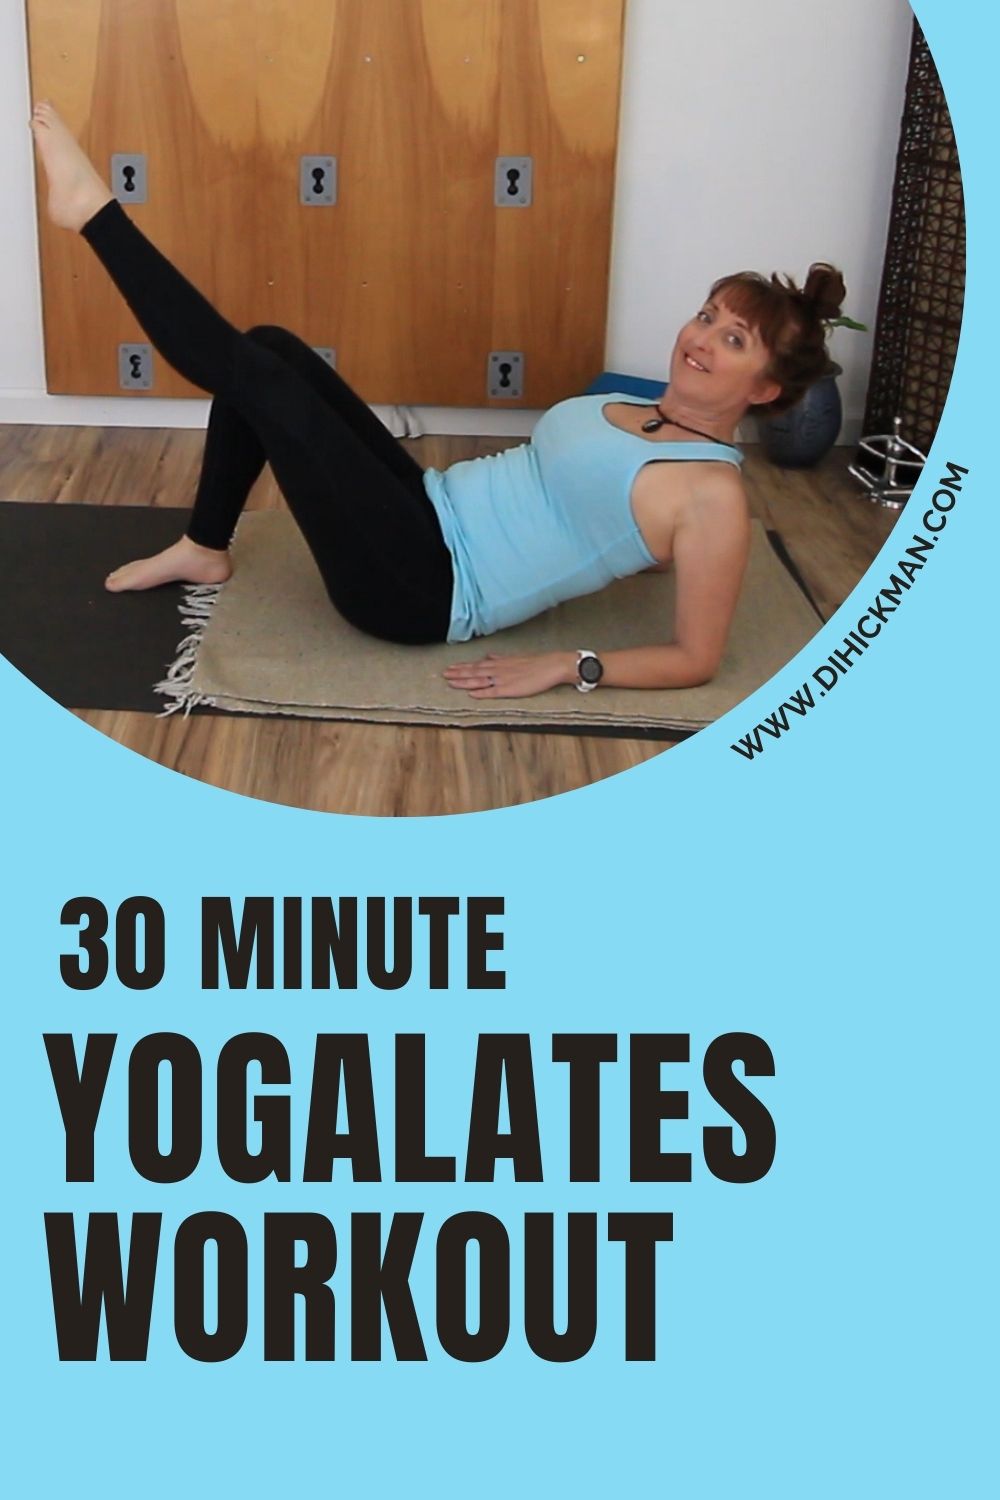 30 minute yogalates workout